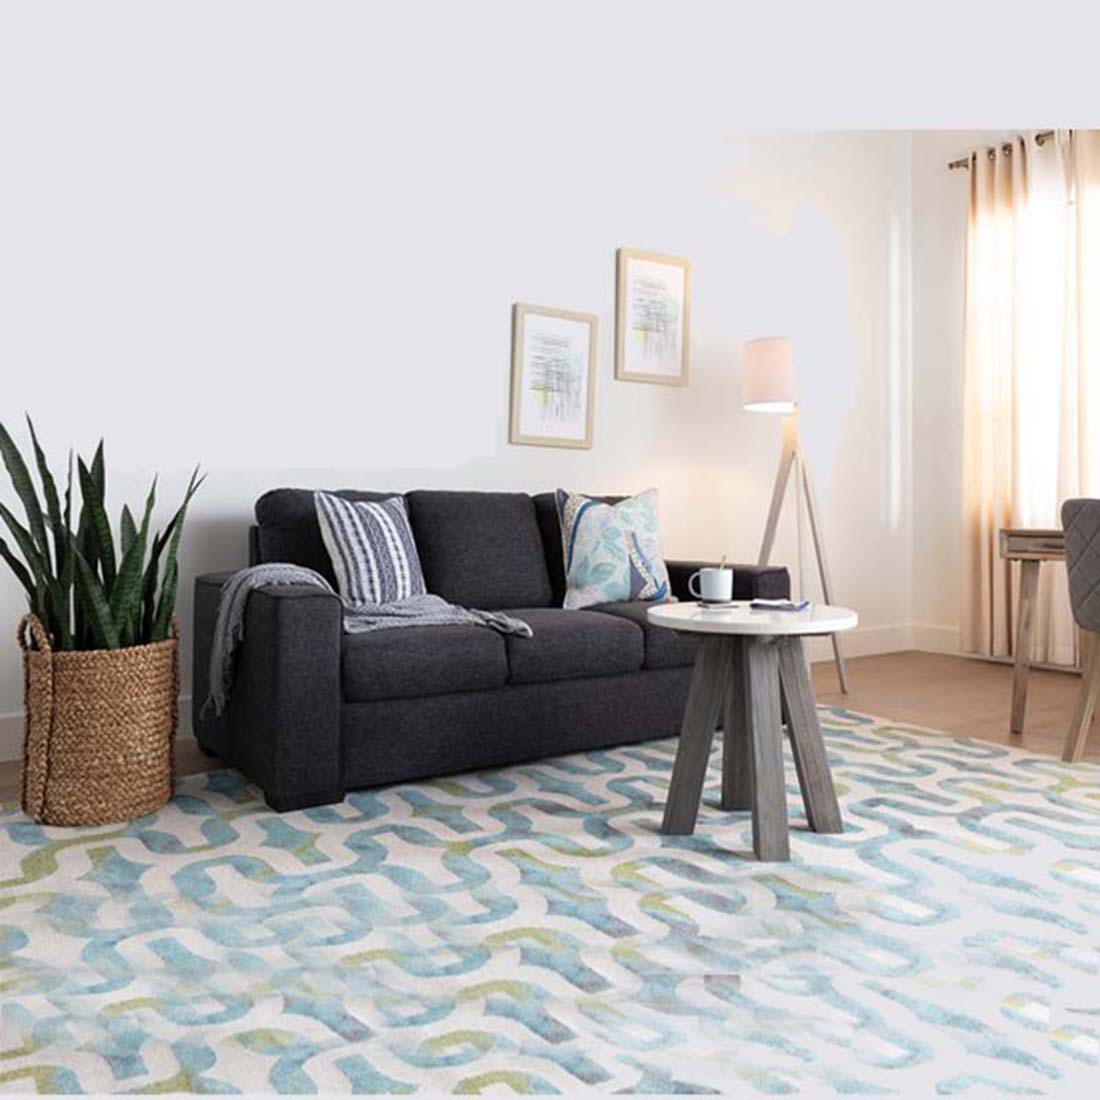 Dane Fabric Sofa for Living Room